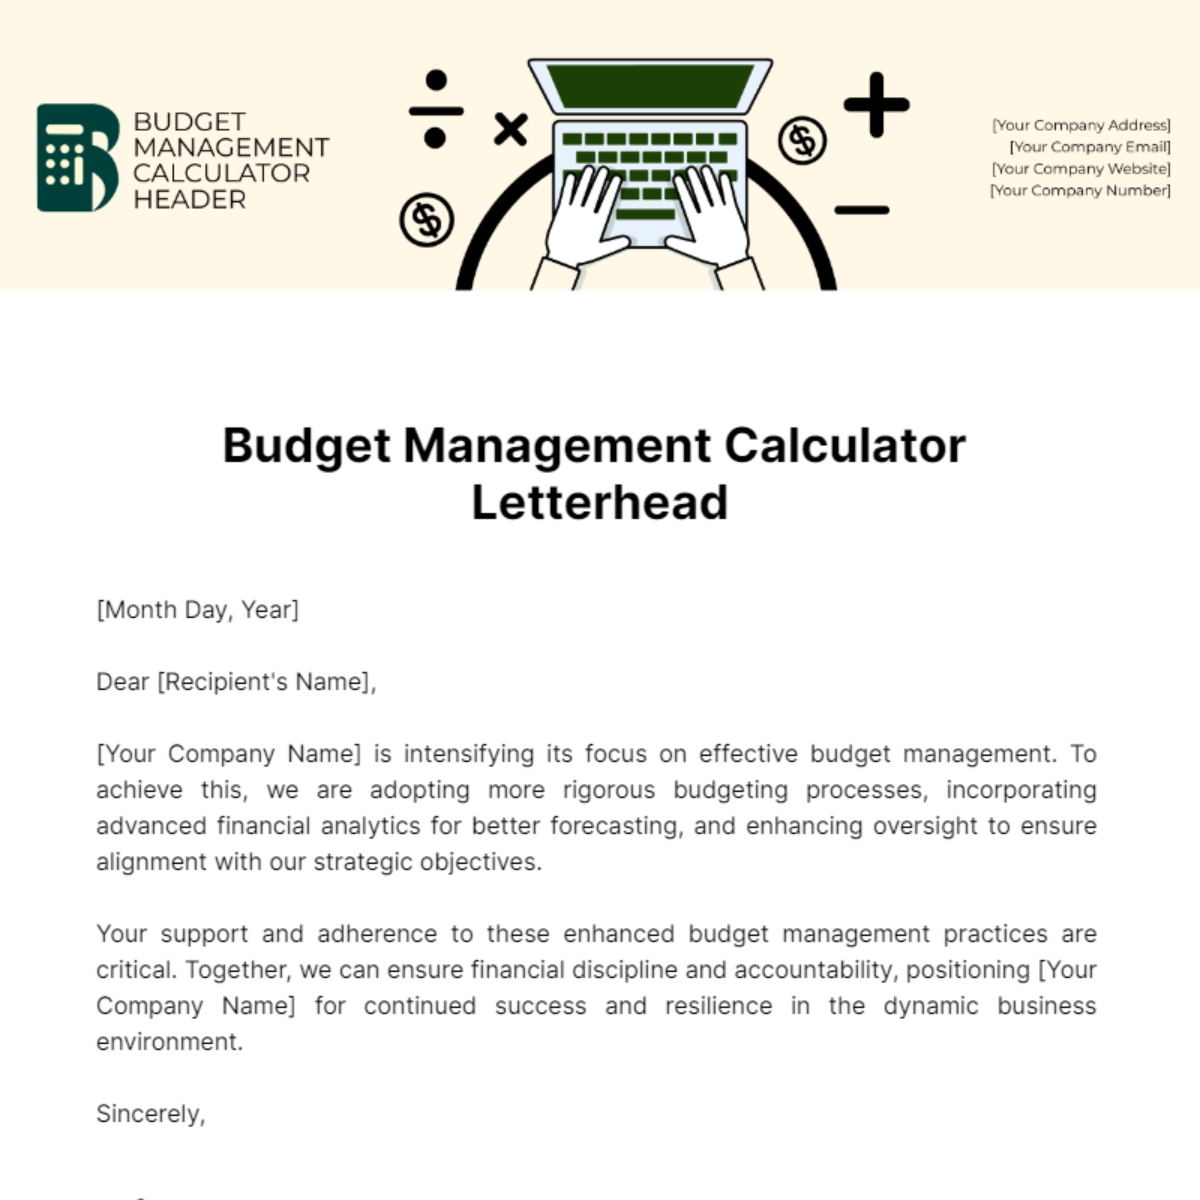 Budget Management Calculator Letterhead Template